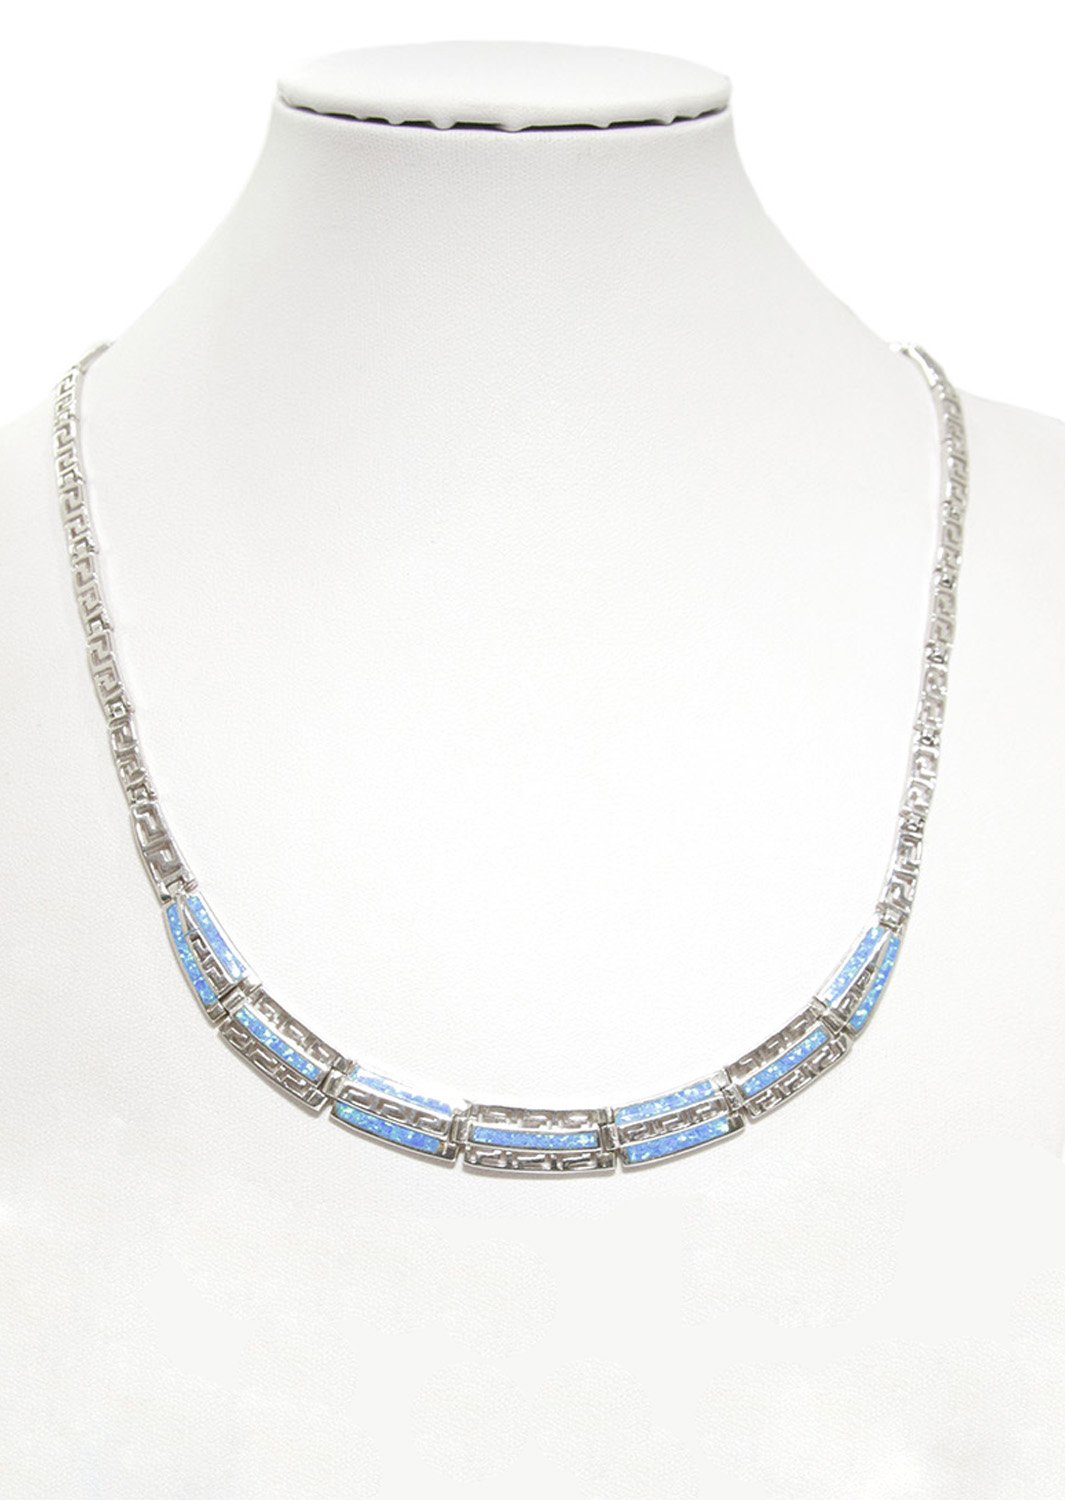 Meander - Greek key design and opal gemstones silver necklace